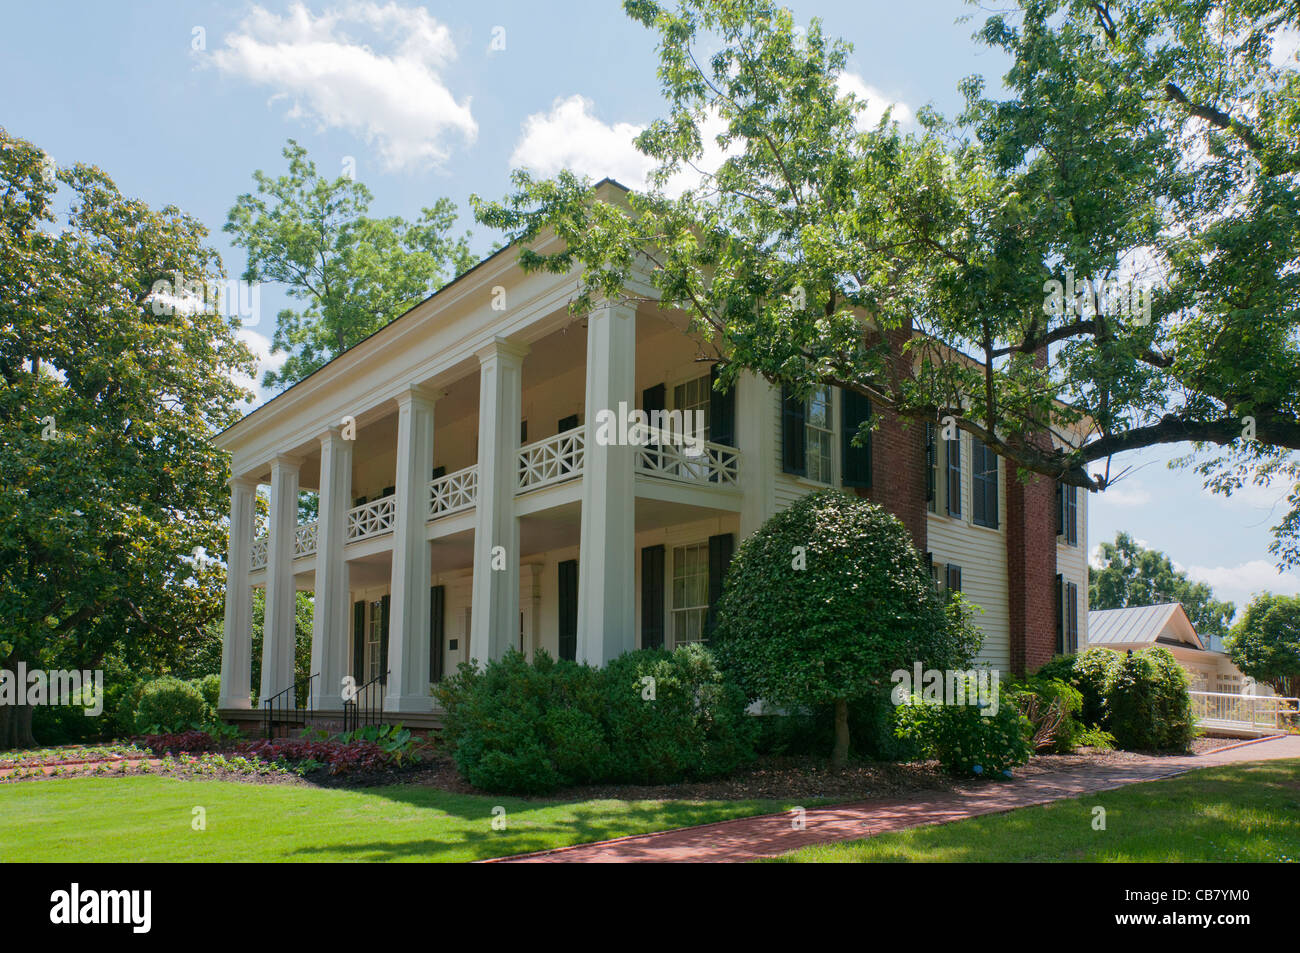 Alabama, Birmingham, Birmingham, Arlington's dernière renaissance grecque antebellum home, vers 1840 Banque D'Images